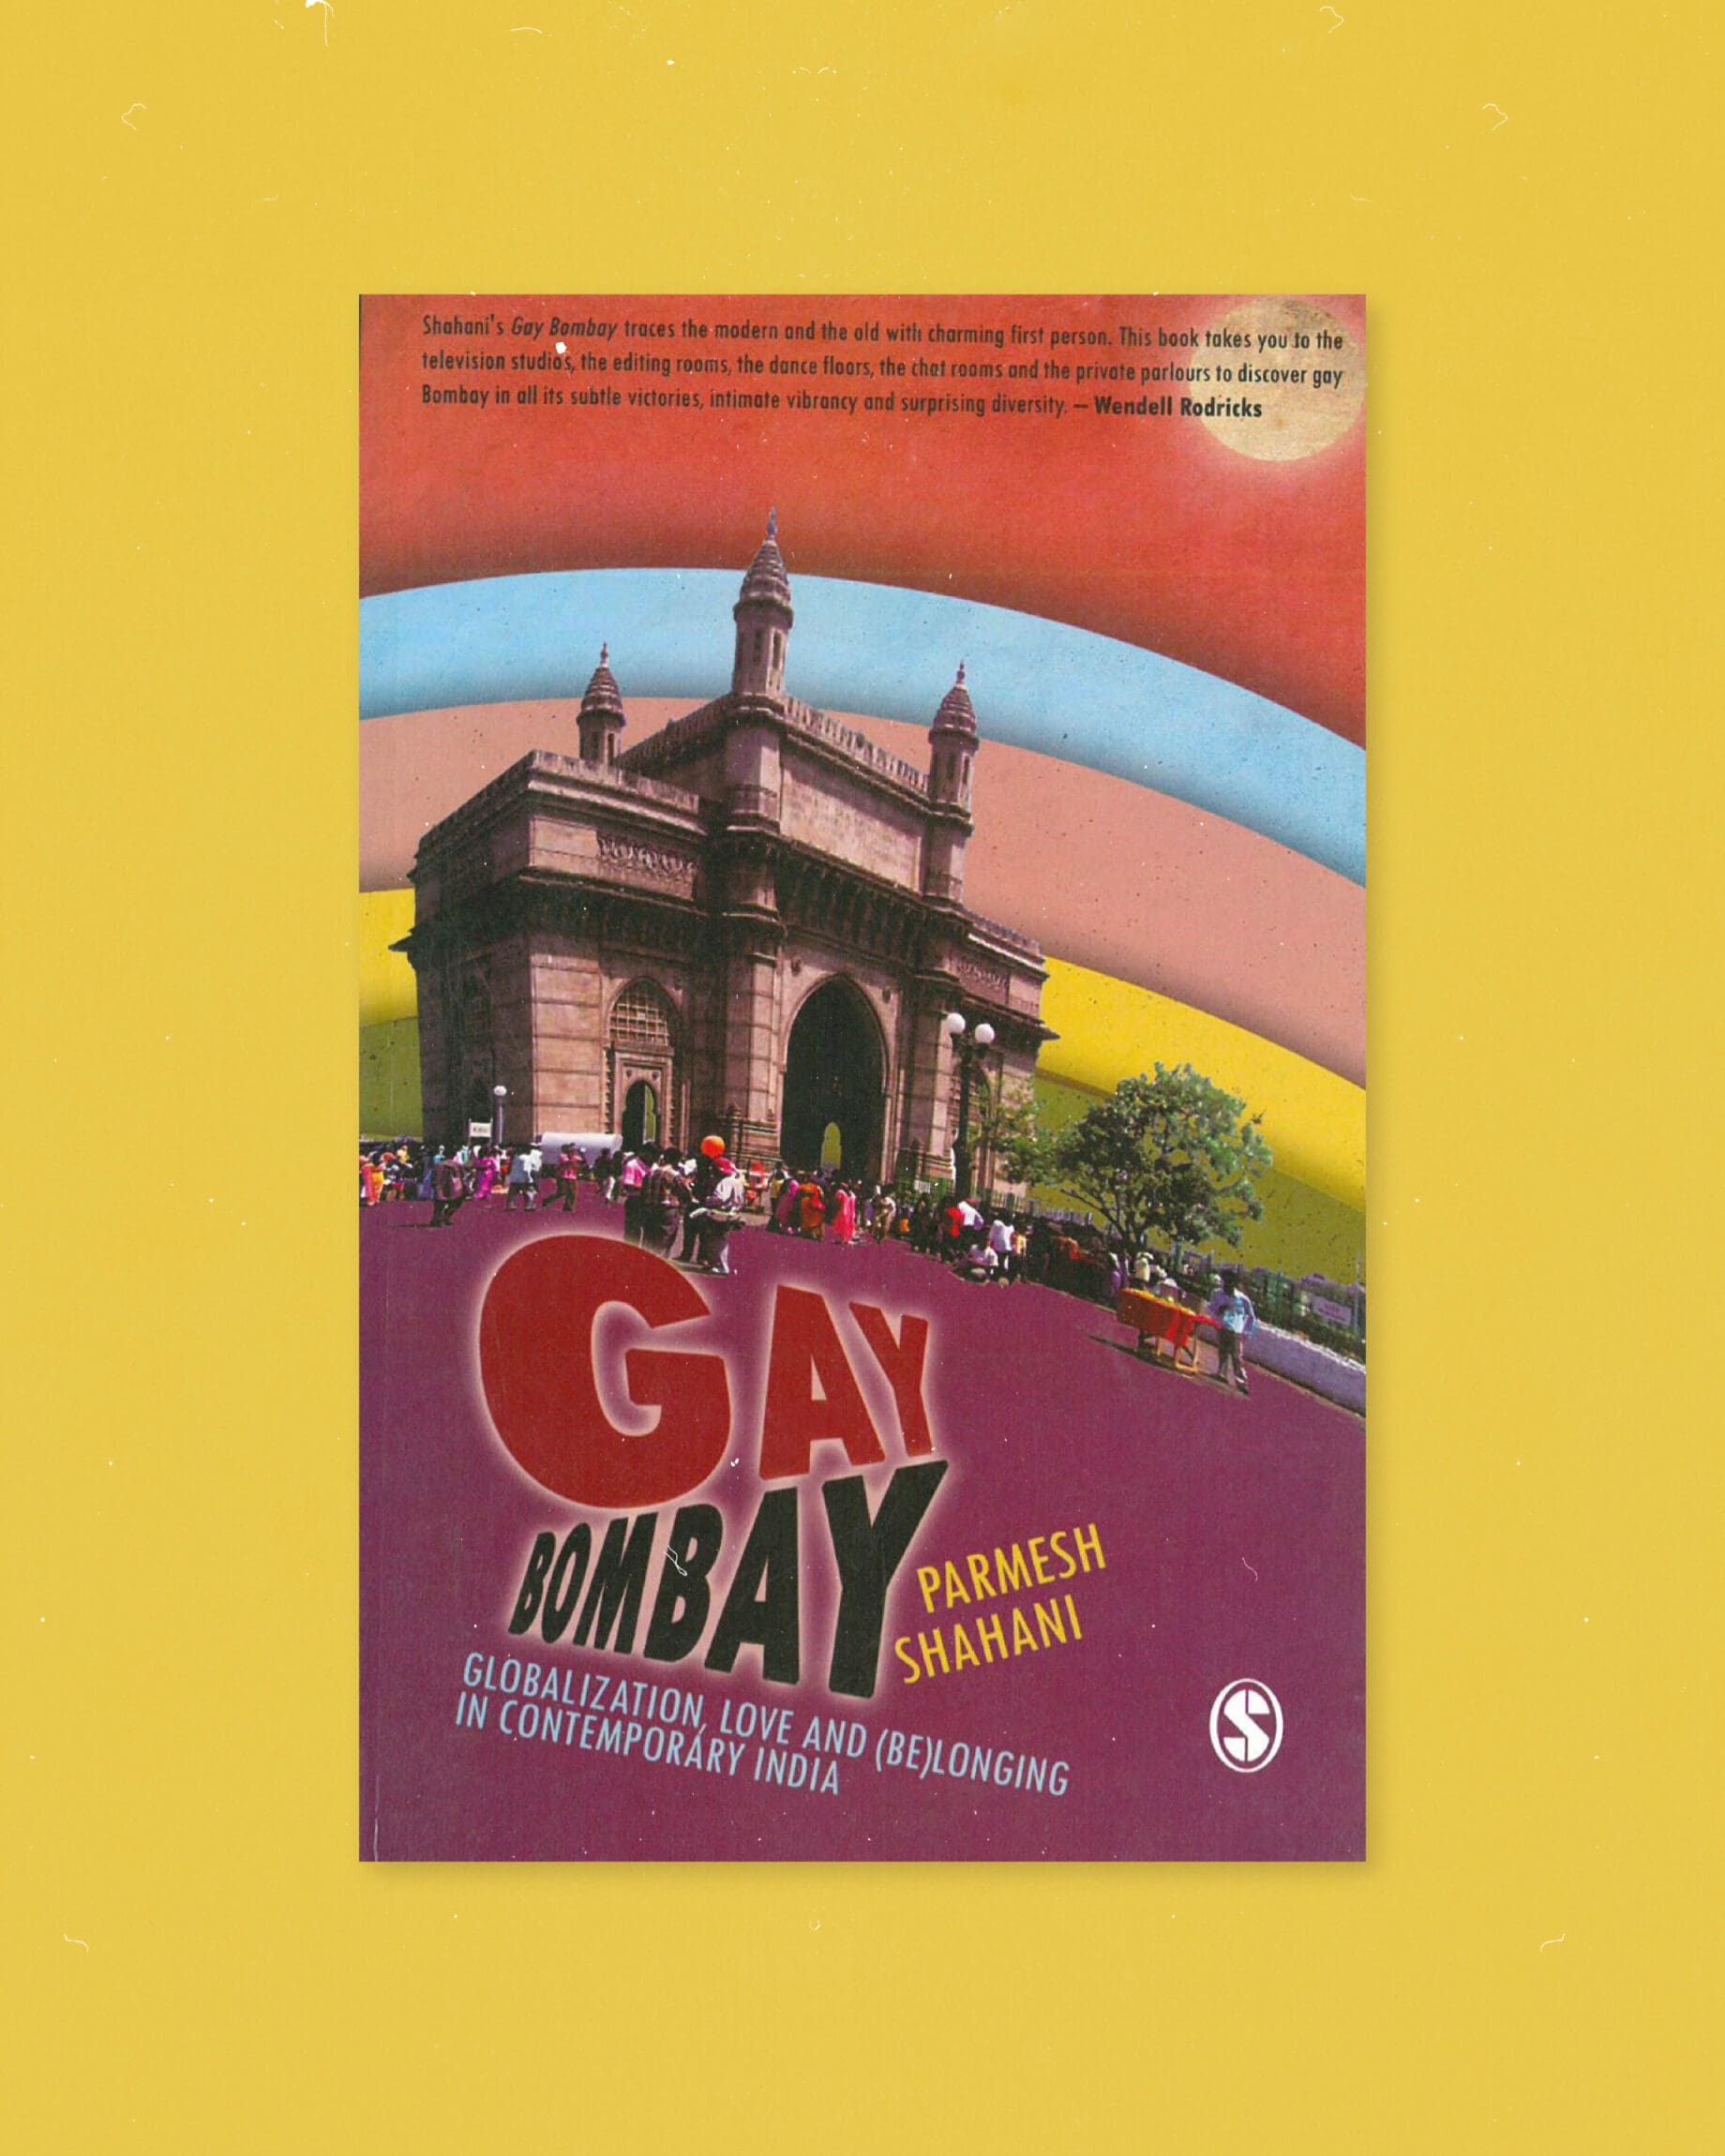 Mumbai creatives | the cover of Gay Bombay by Parmesh Shahani